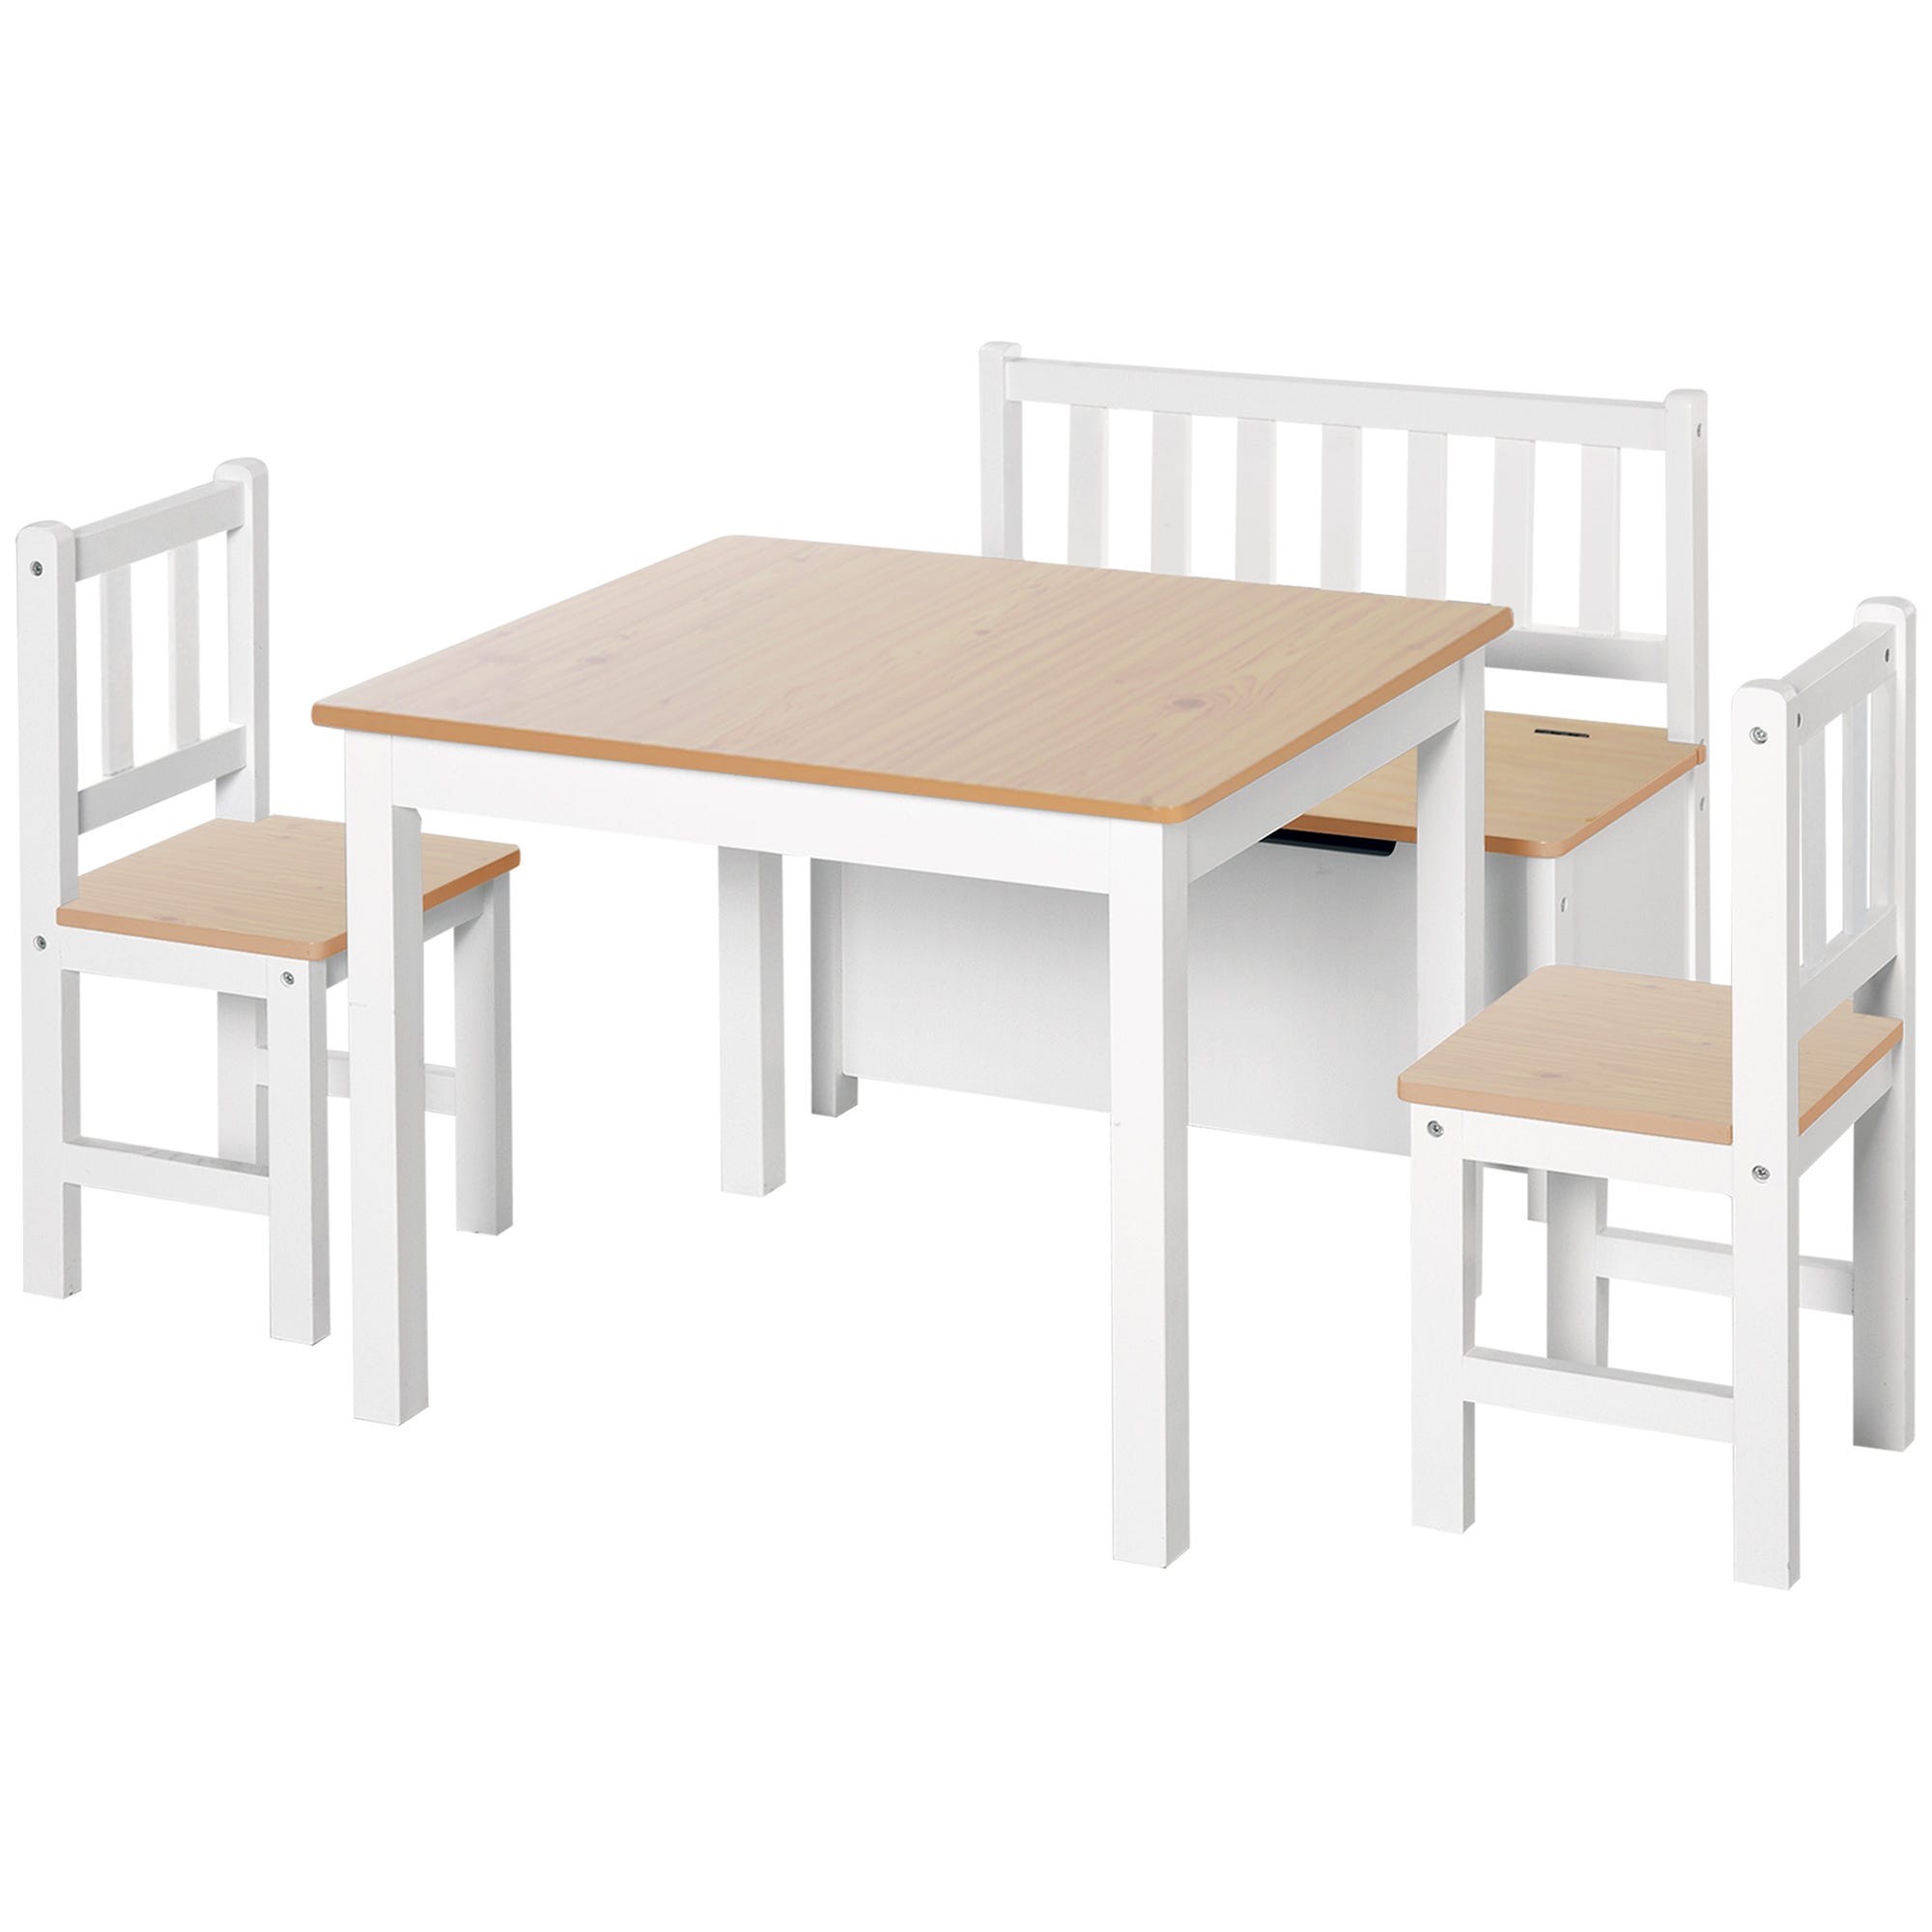  Mesas y sillas de madera maciza para niños, mesa de